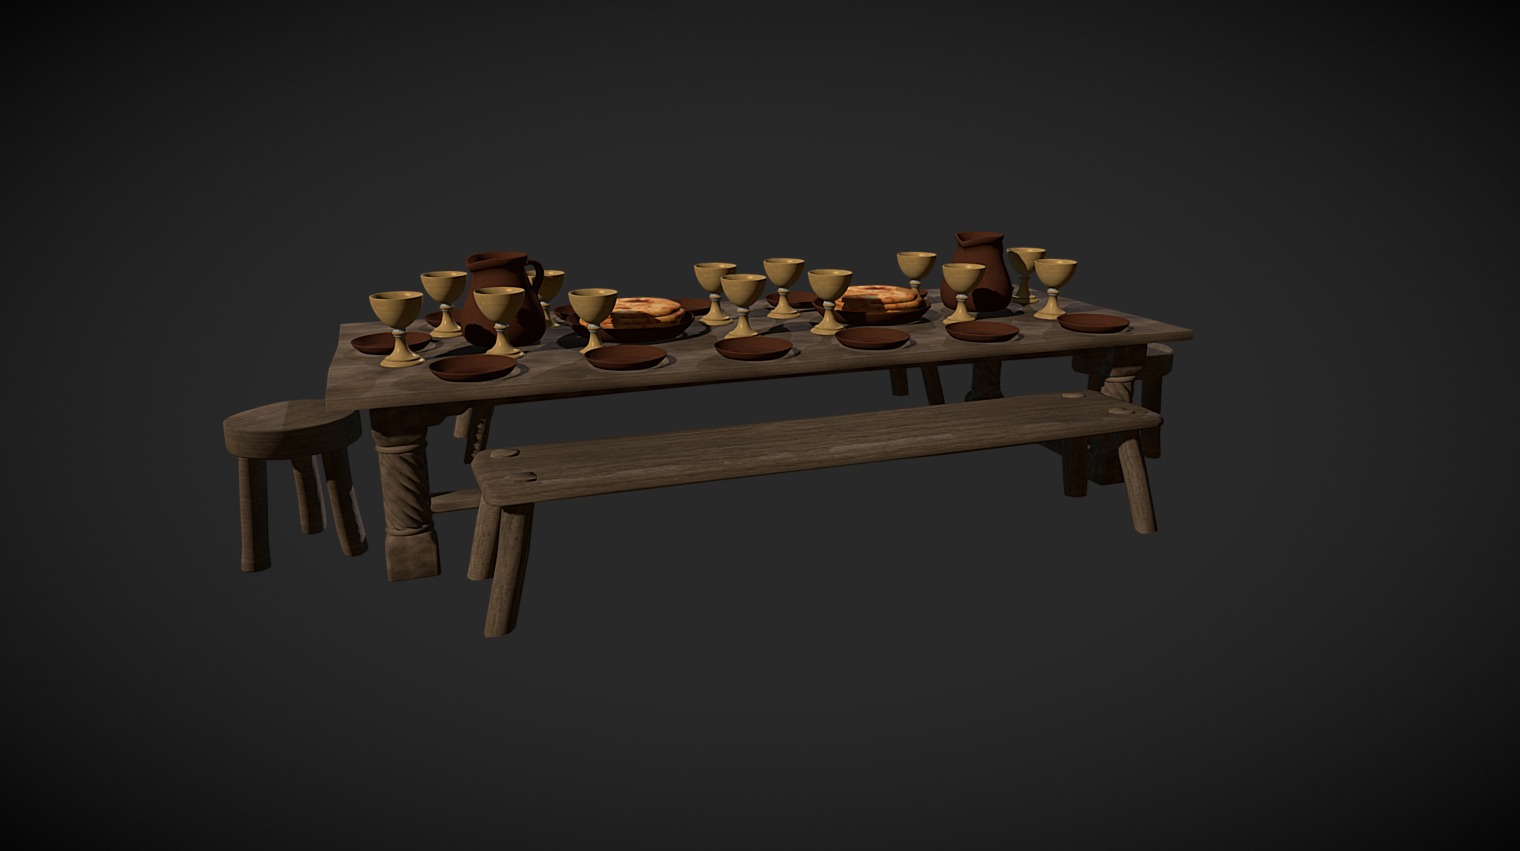 La última cena/The last supper - 3D model by VIRTUAL BIBLICAL MUSEUM (@nycspain) 3d model